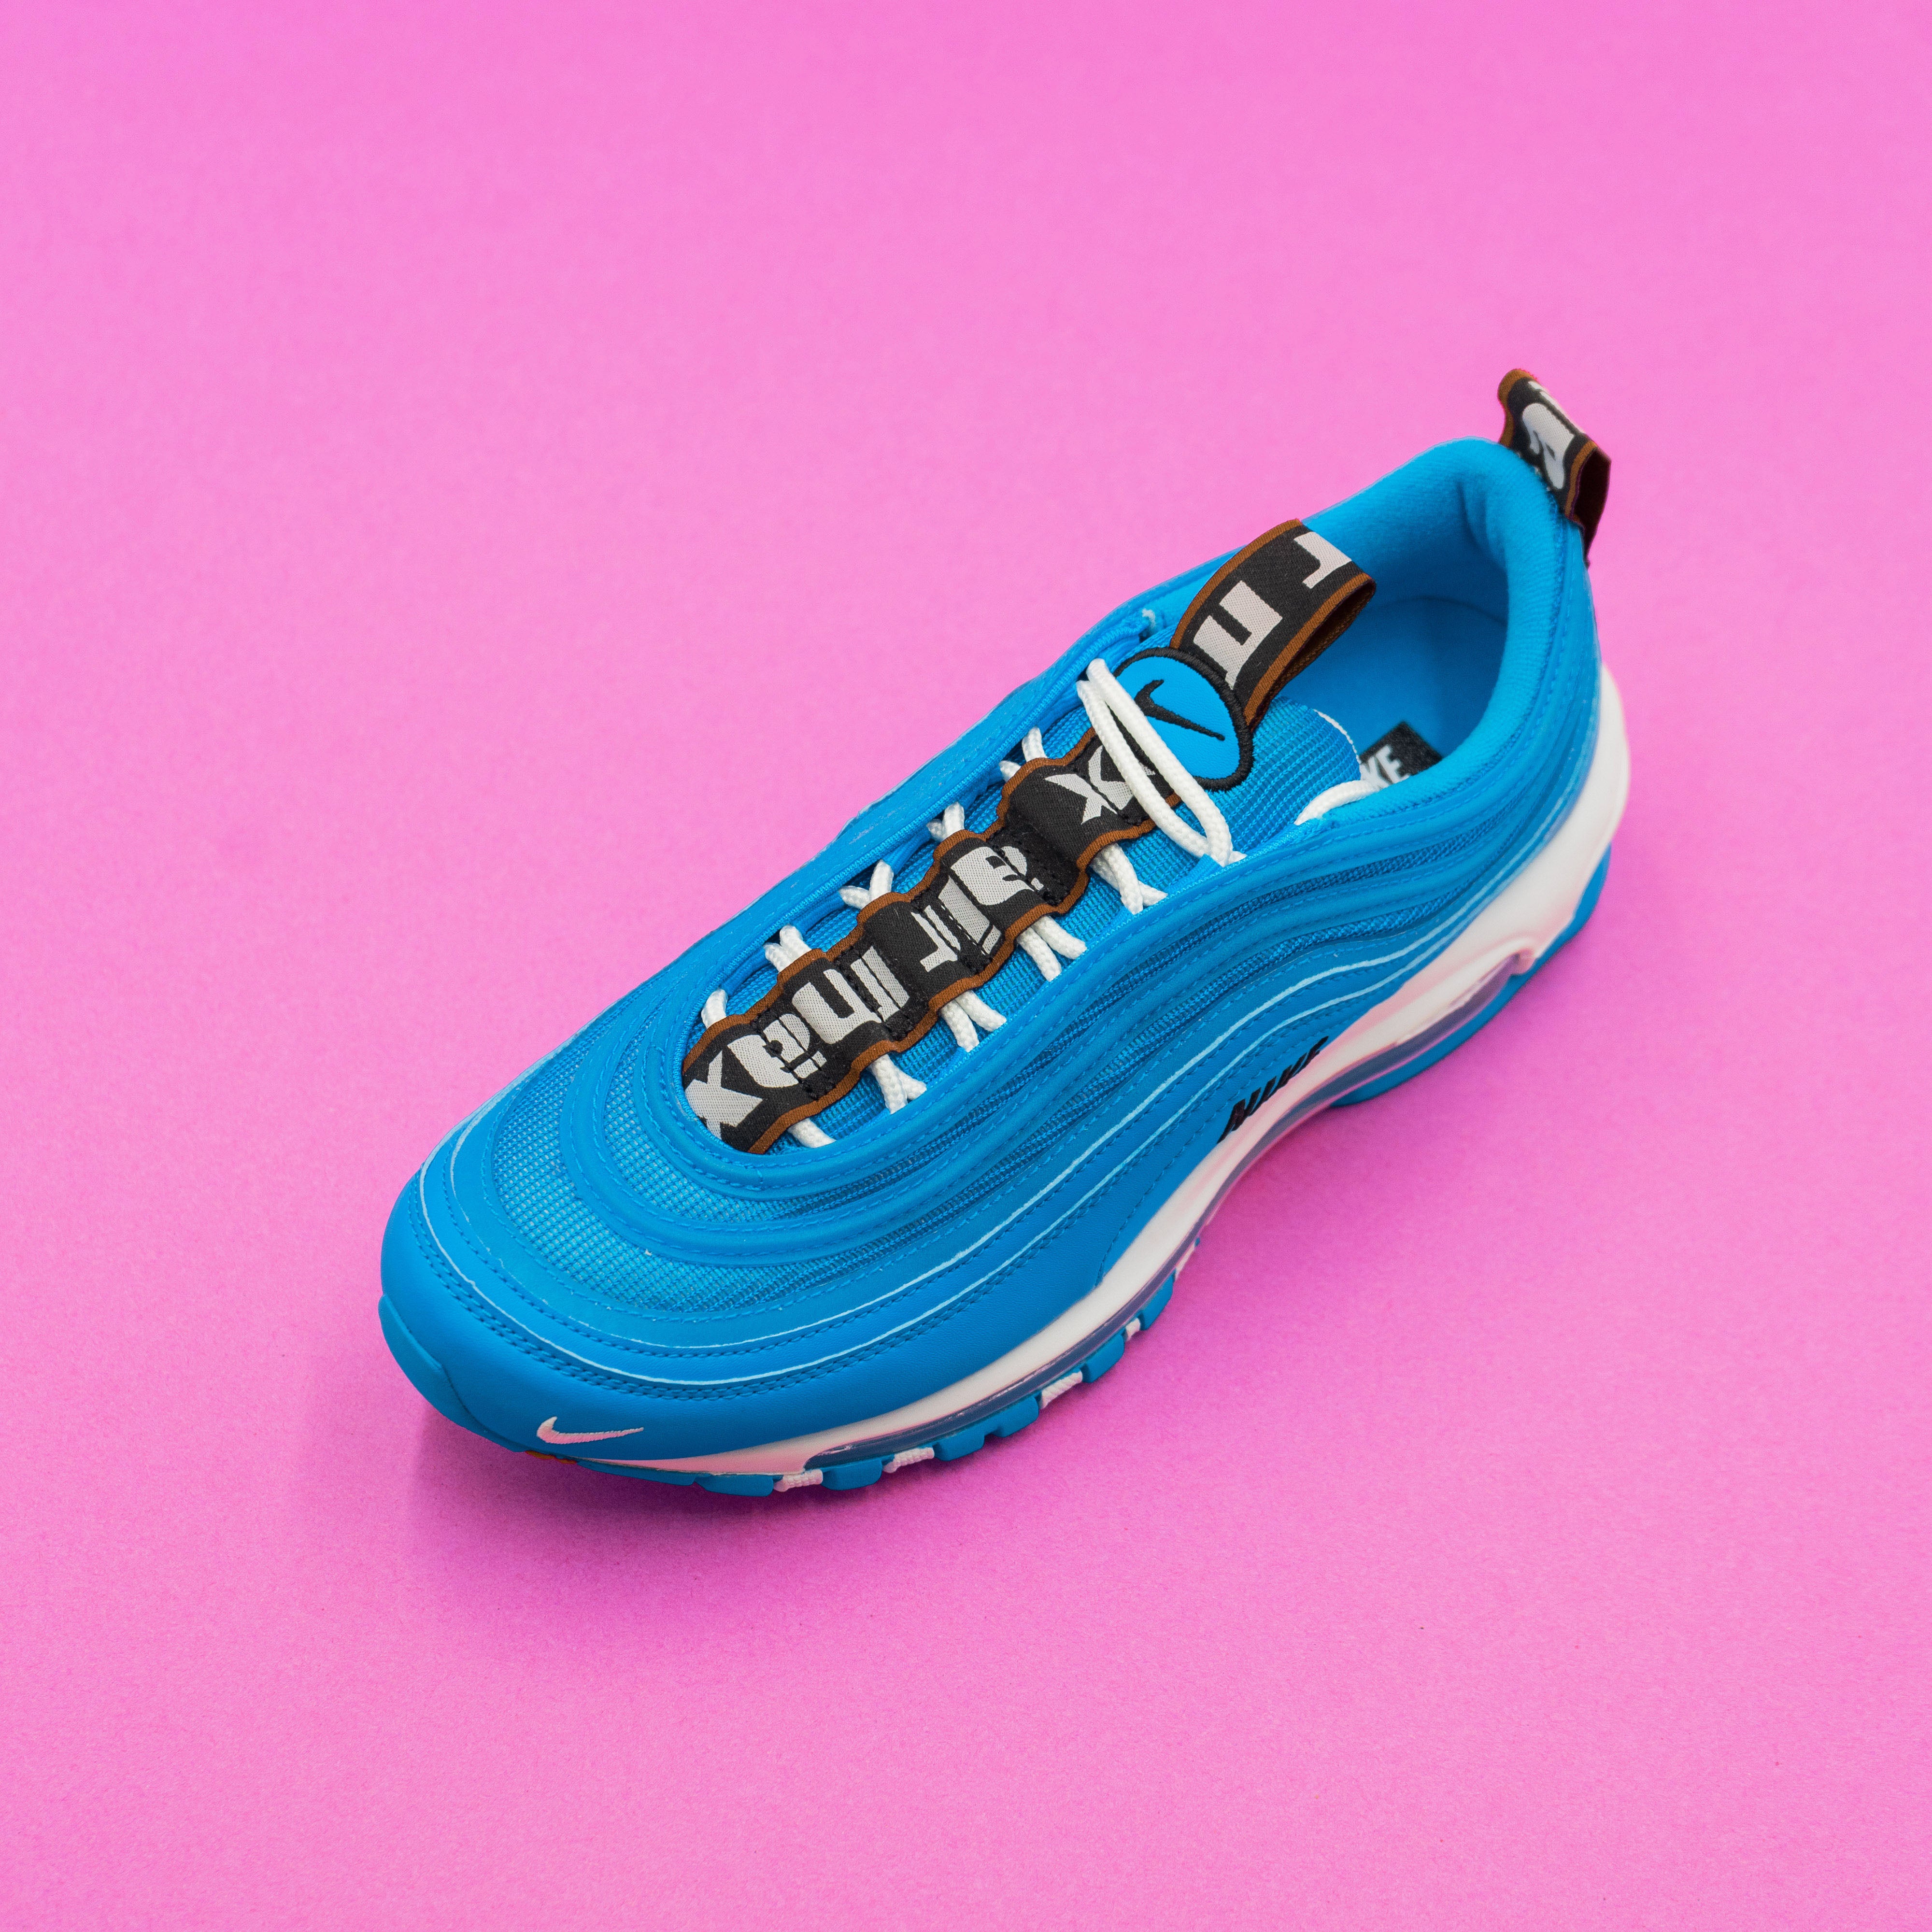 Nike Air Max 97 Premium "Blue Hero" 11/21 Nohble